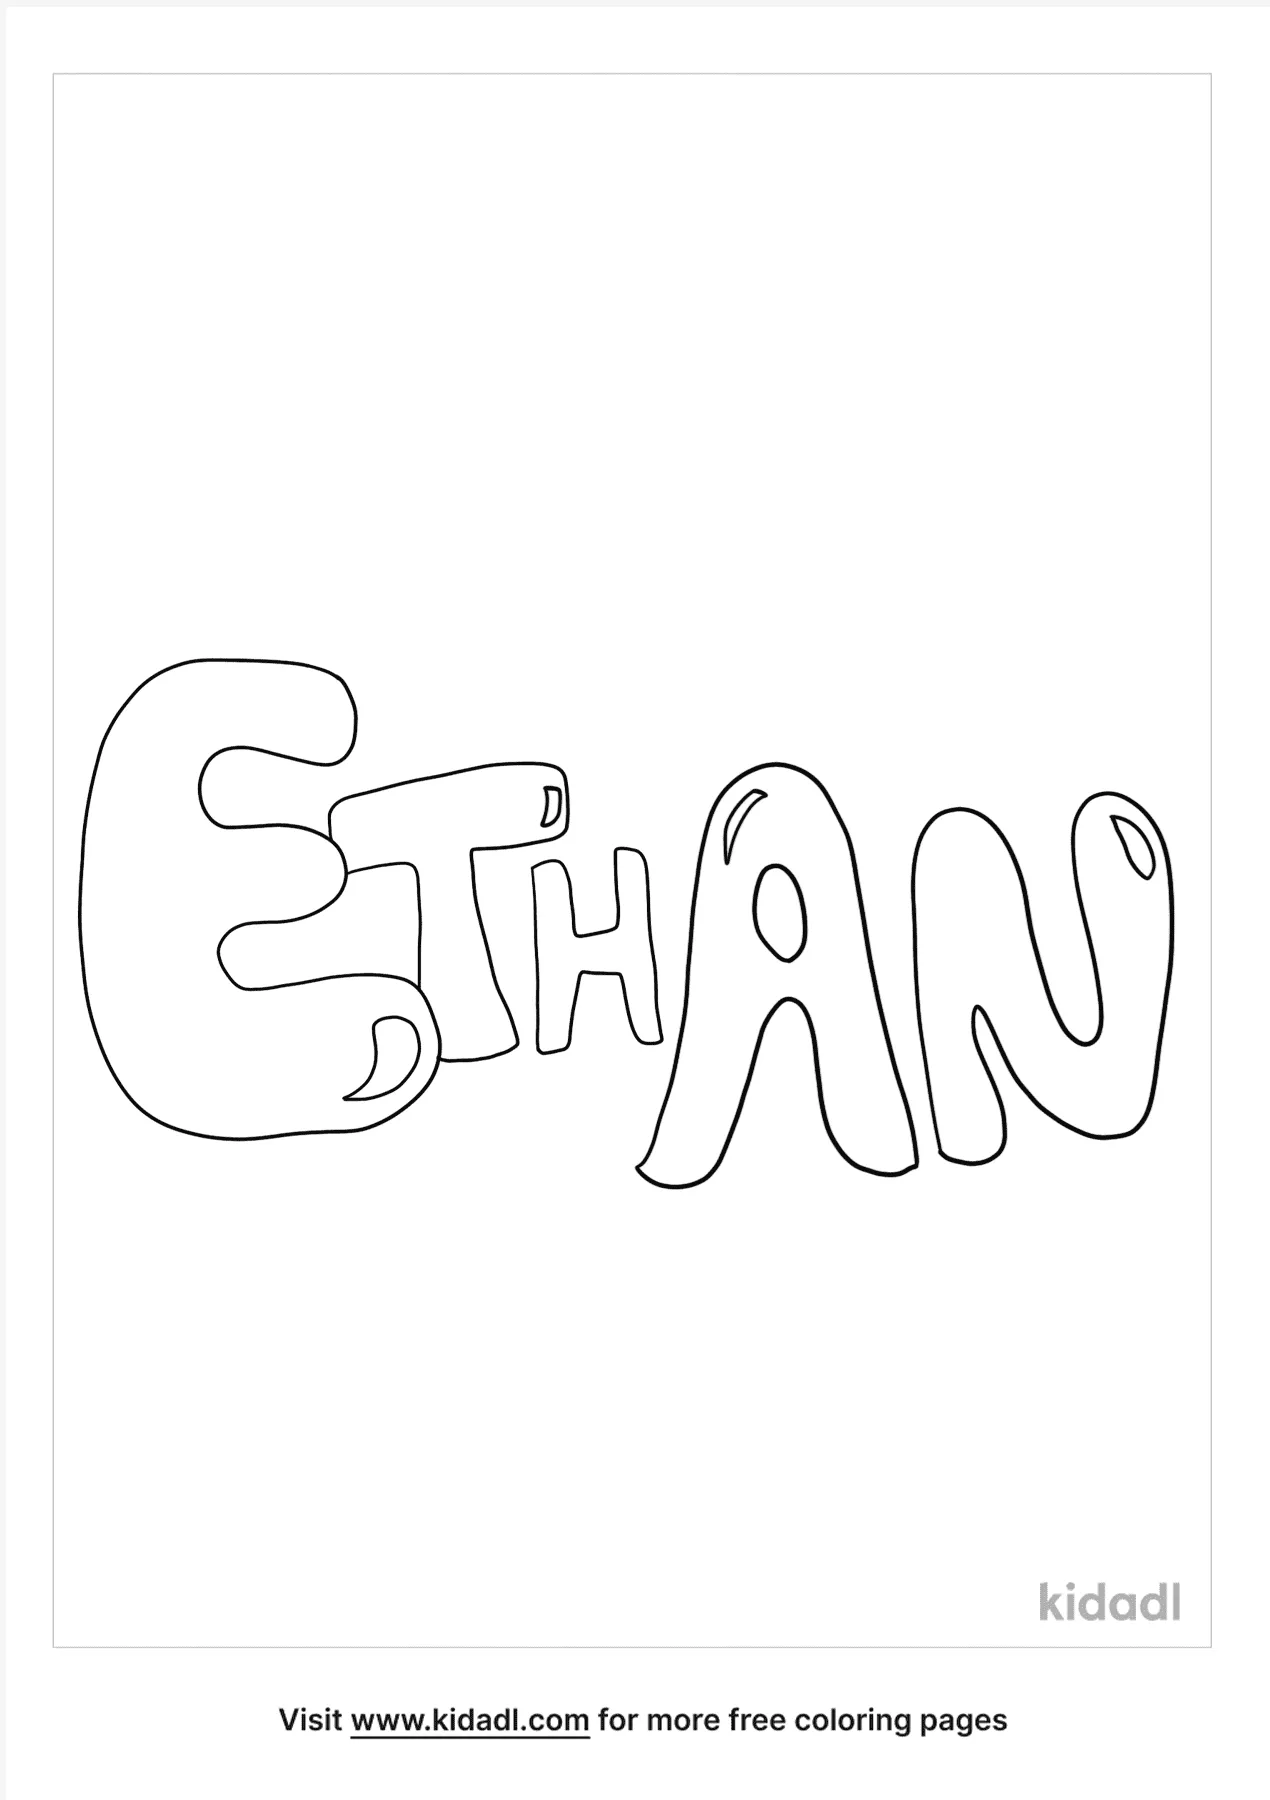 ethan bubble letters kidadl